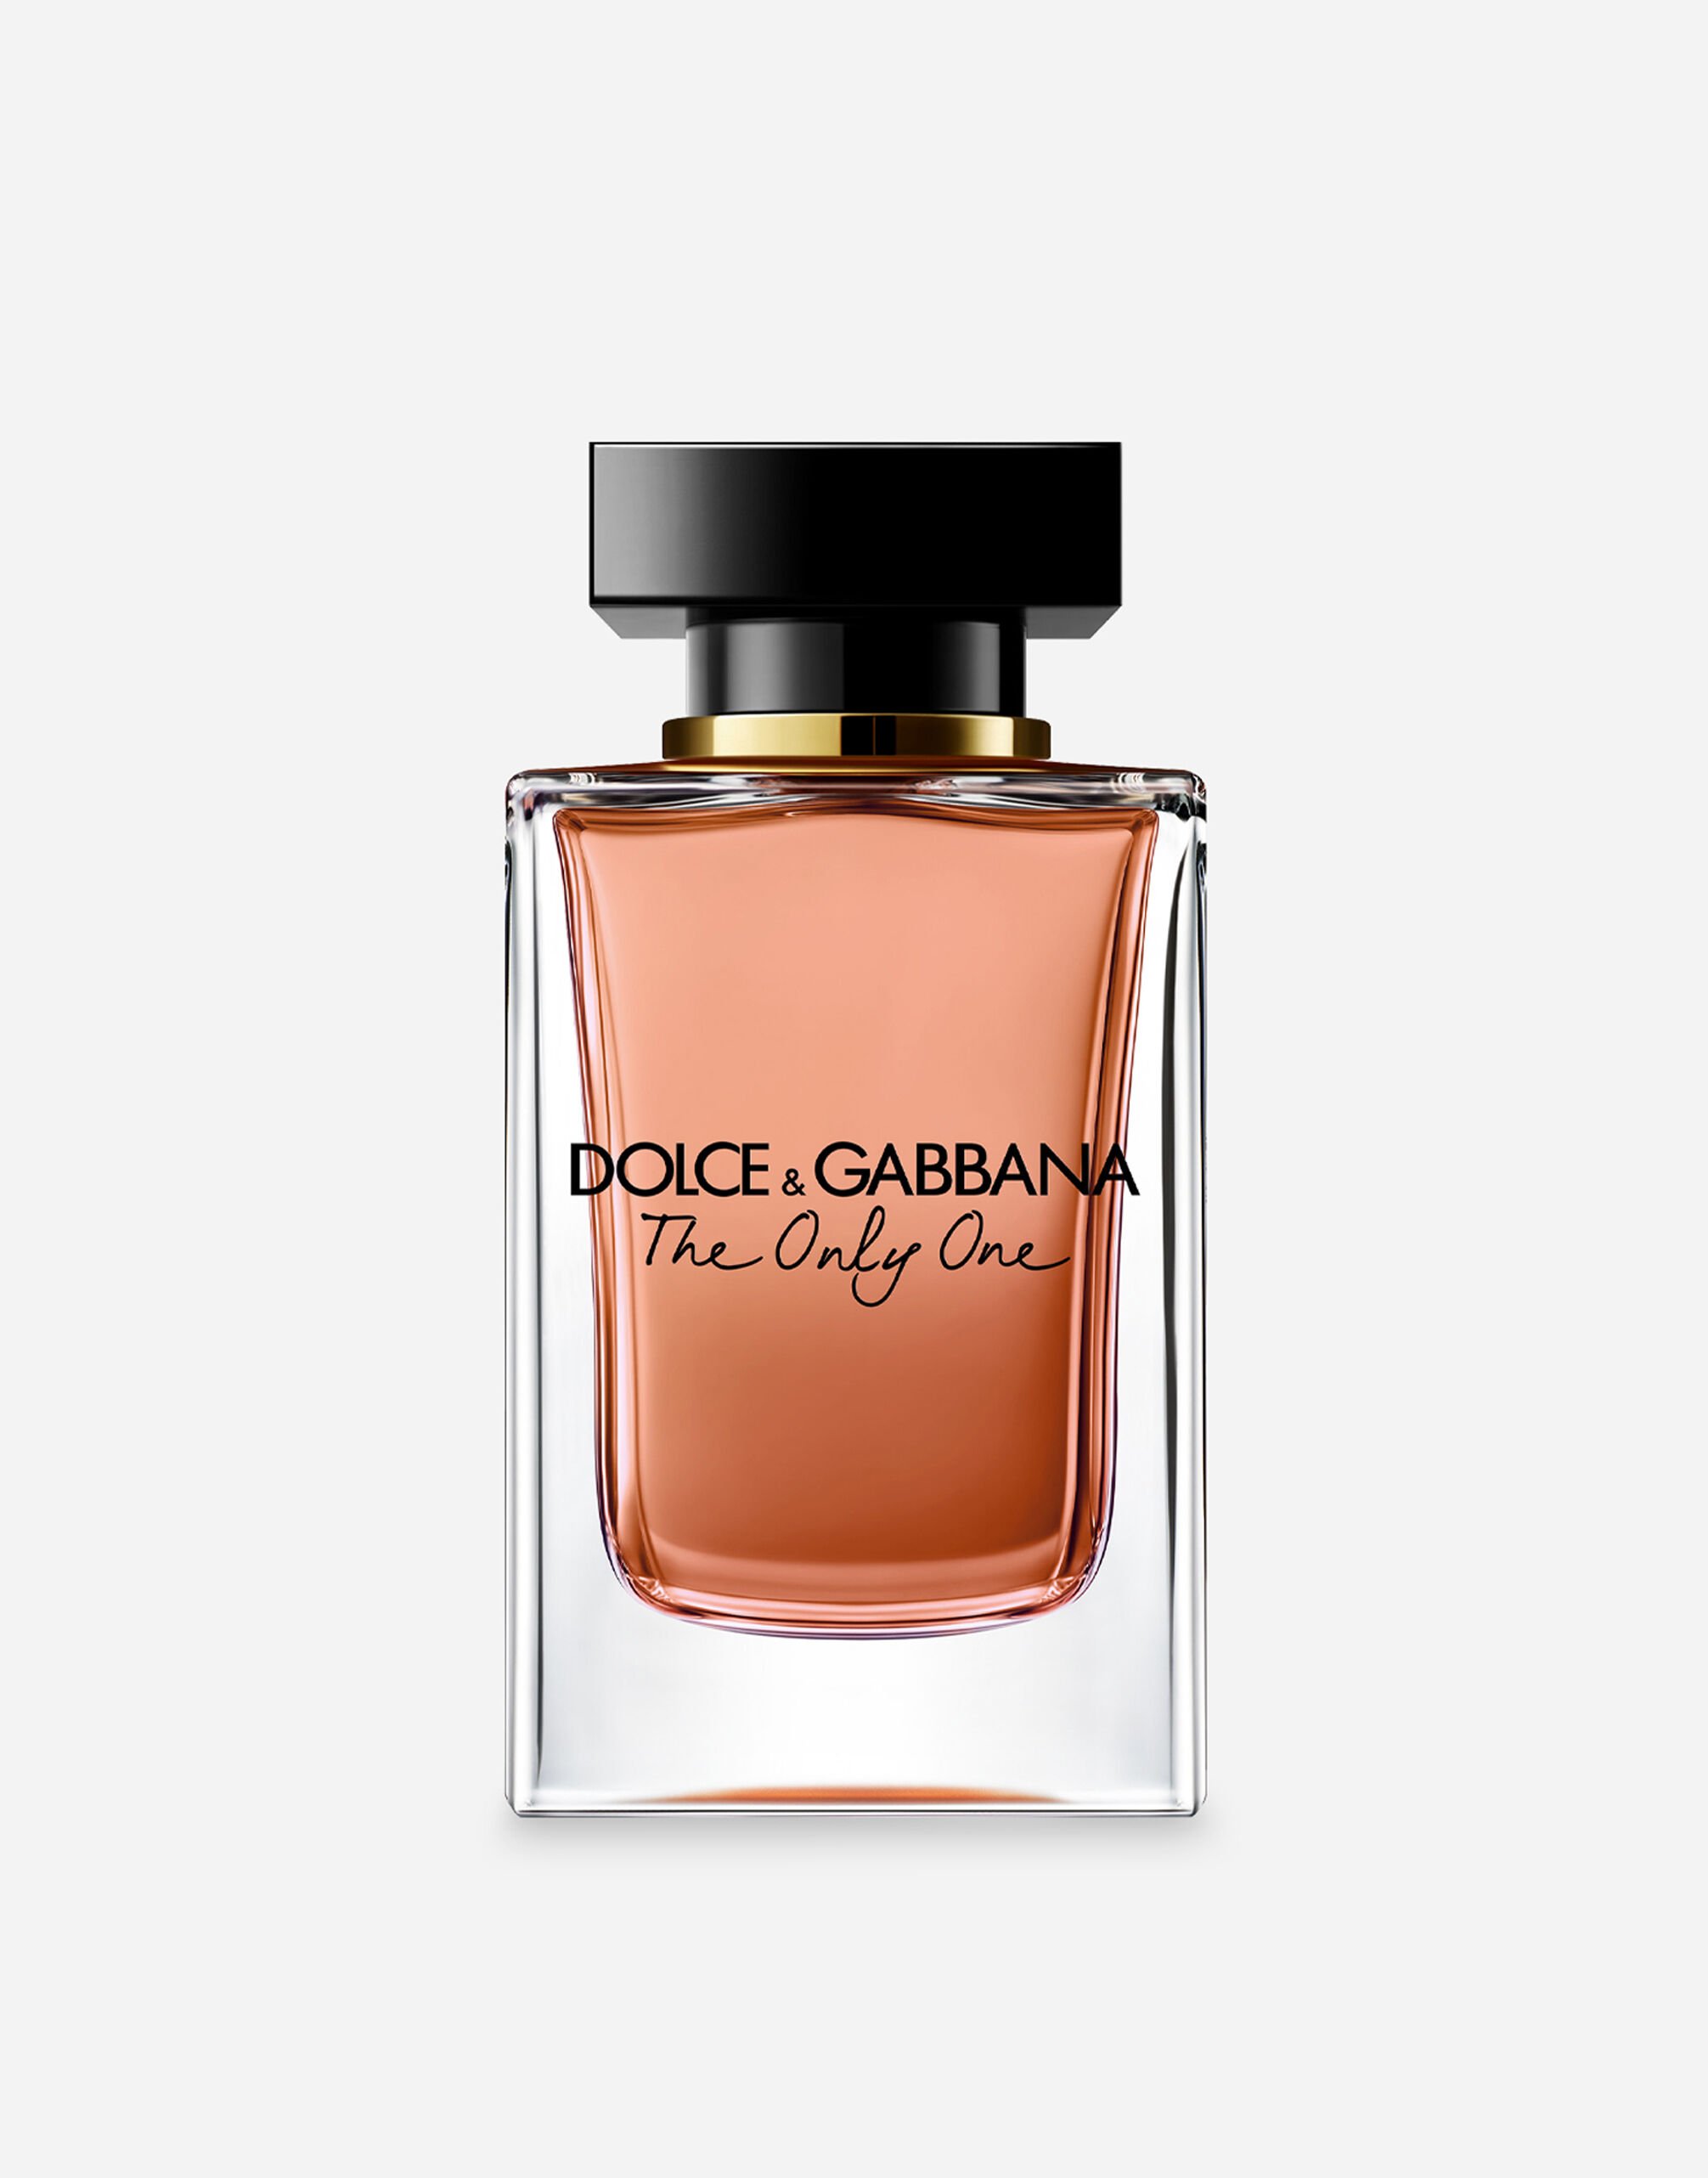 Dolce & Gabbana The Only One Eau de Parfum - VT00LWVT000